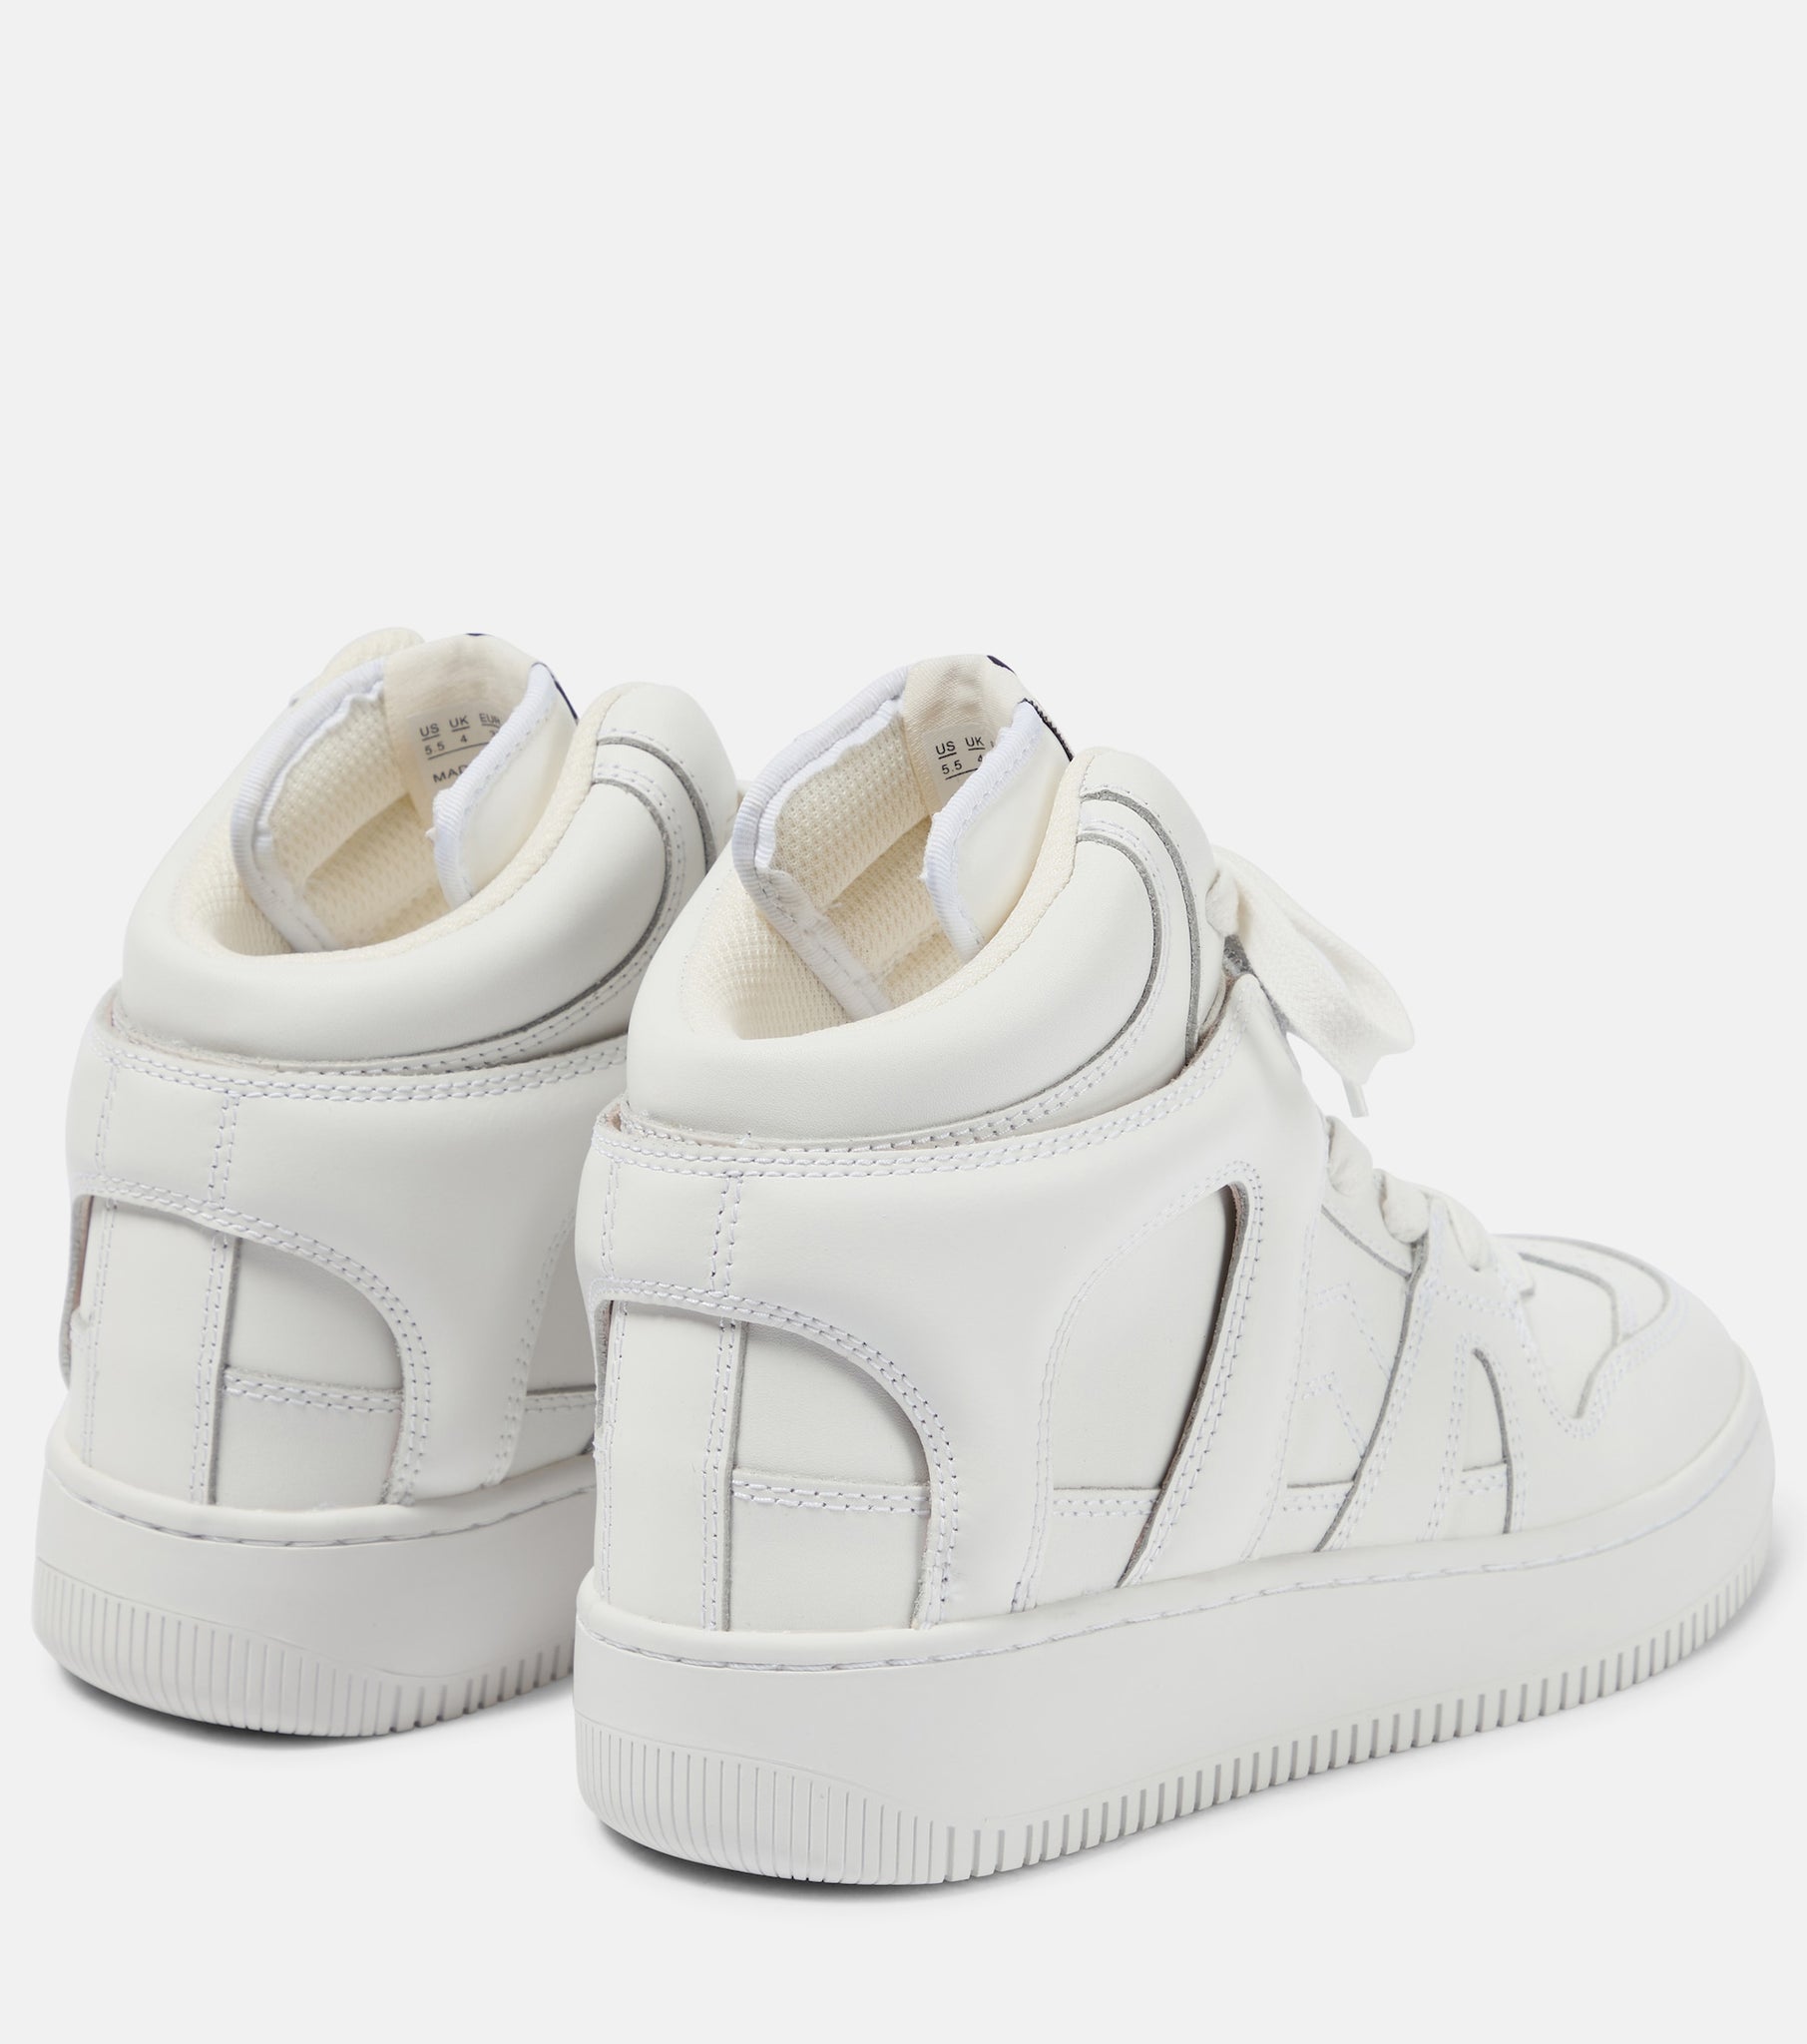 Brooklee sneakers white